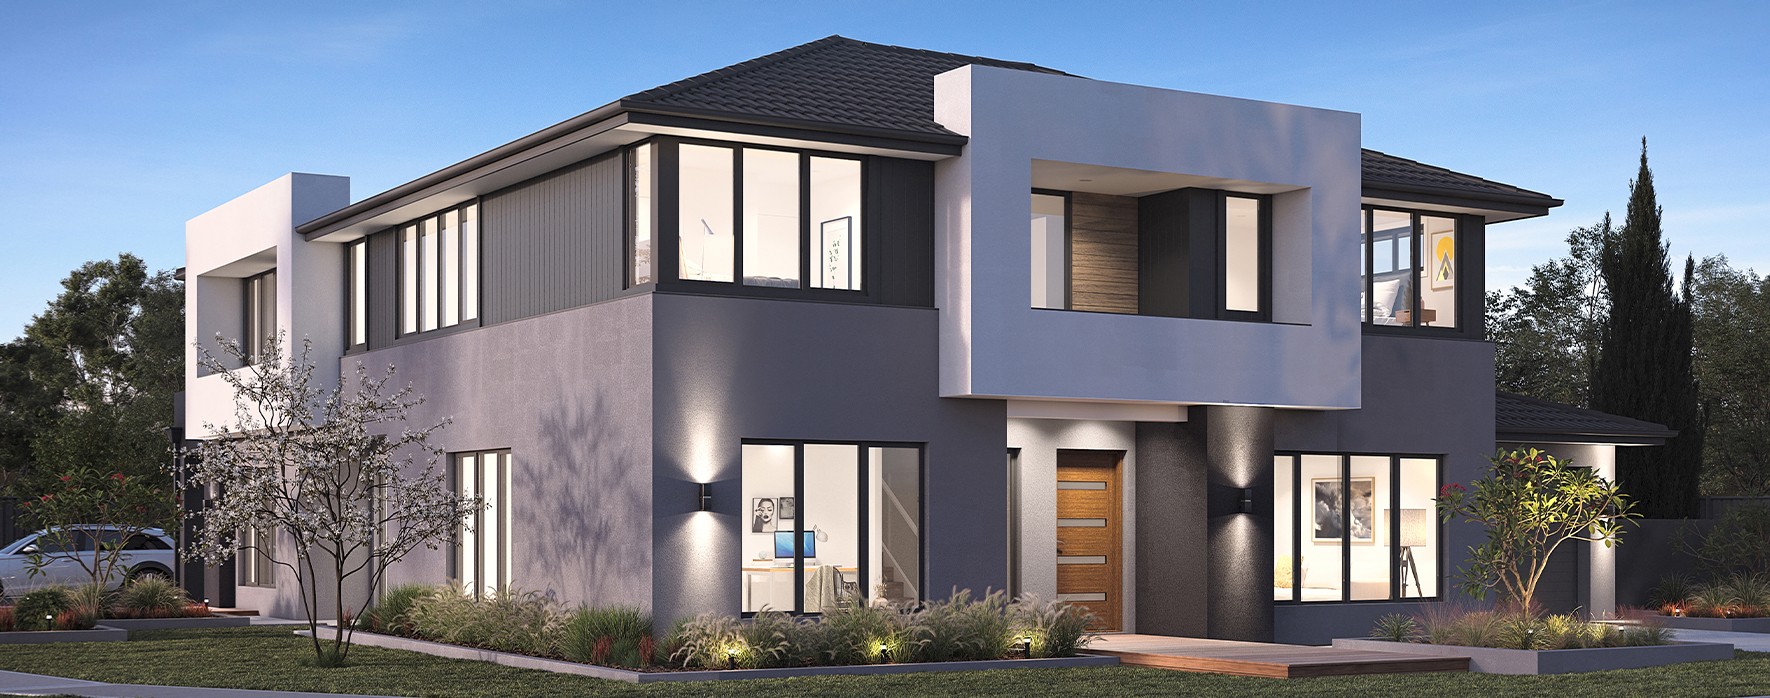 oakland-duplex-house-design-unit-2-contemporary-facade